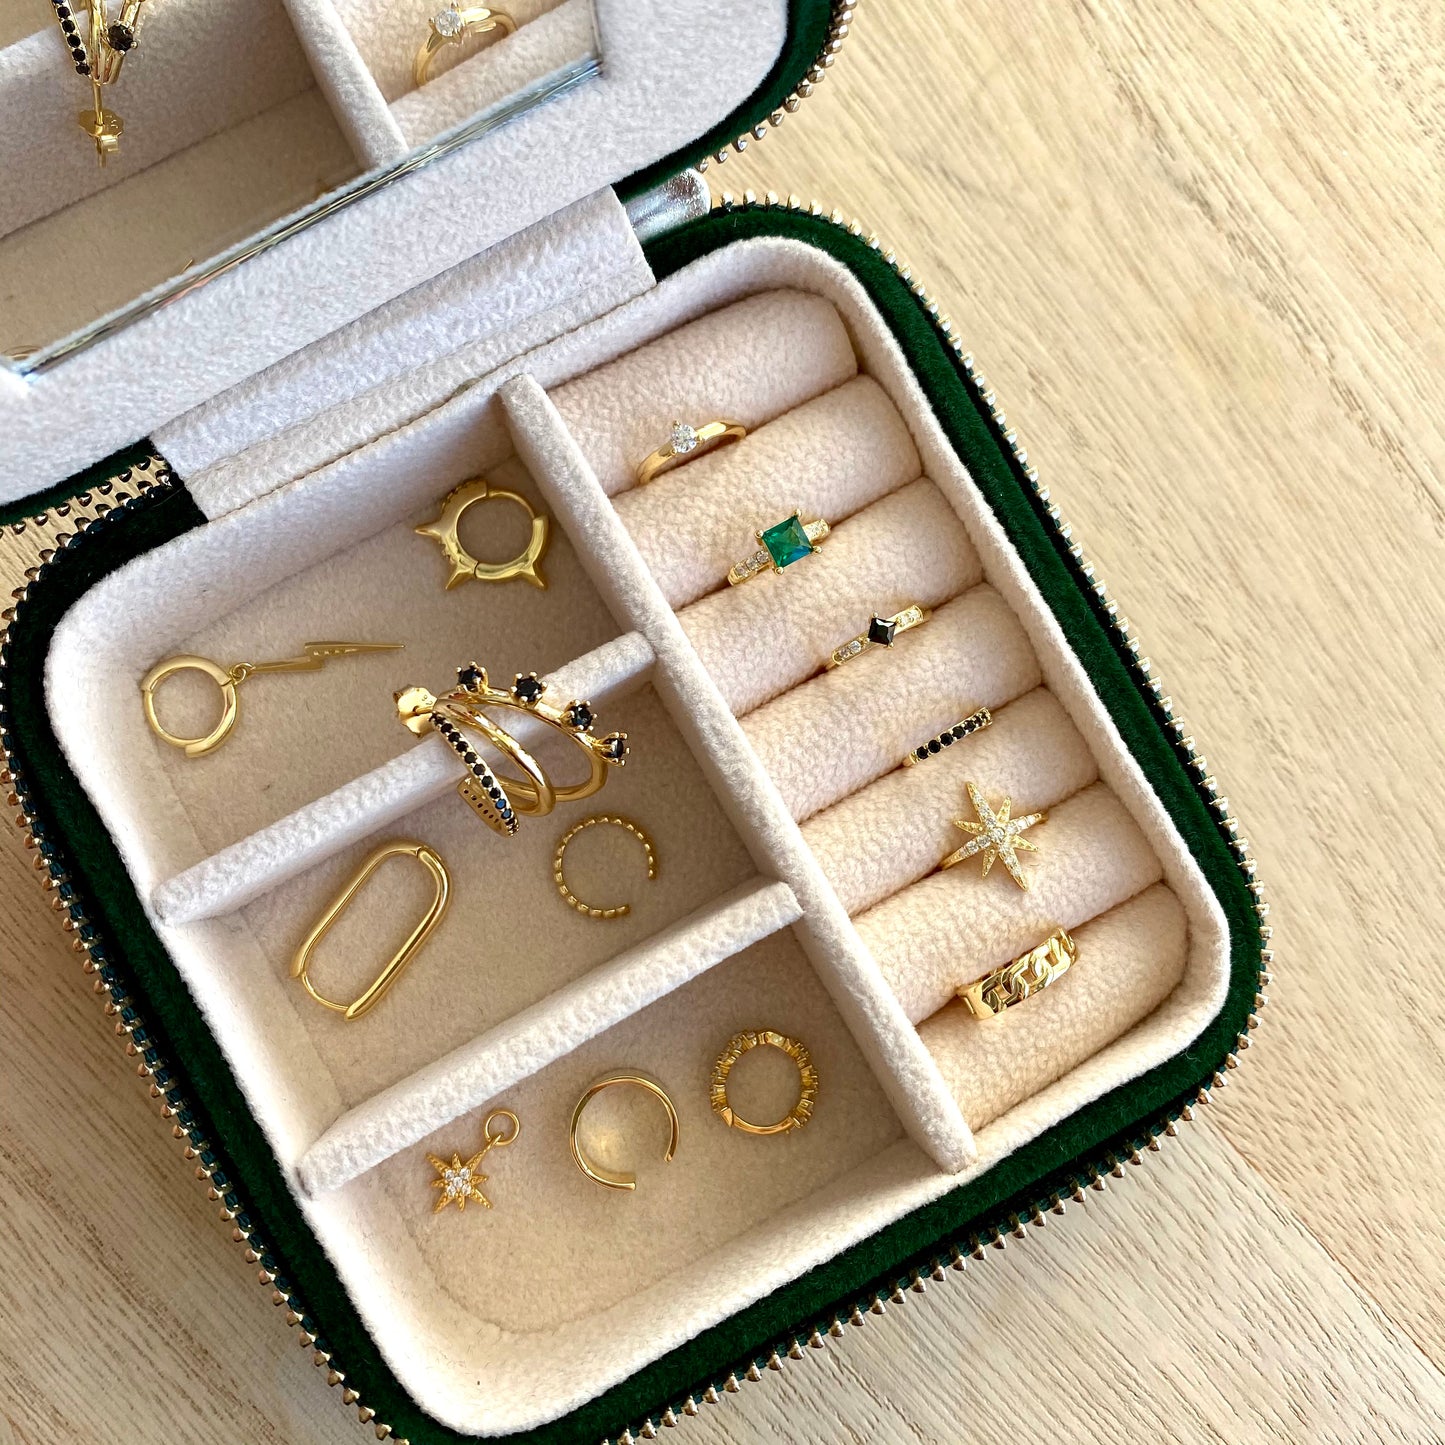 travel case perfect for jewelry boite de bijoux pour voyage